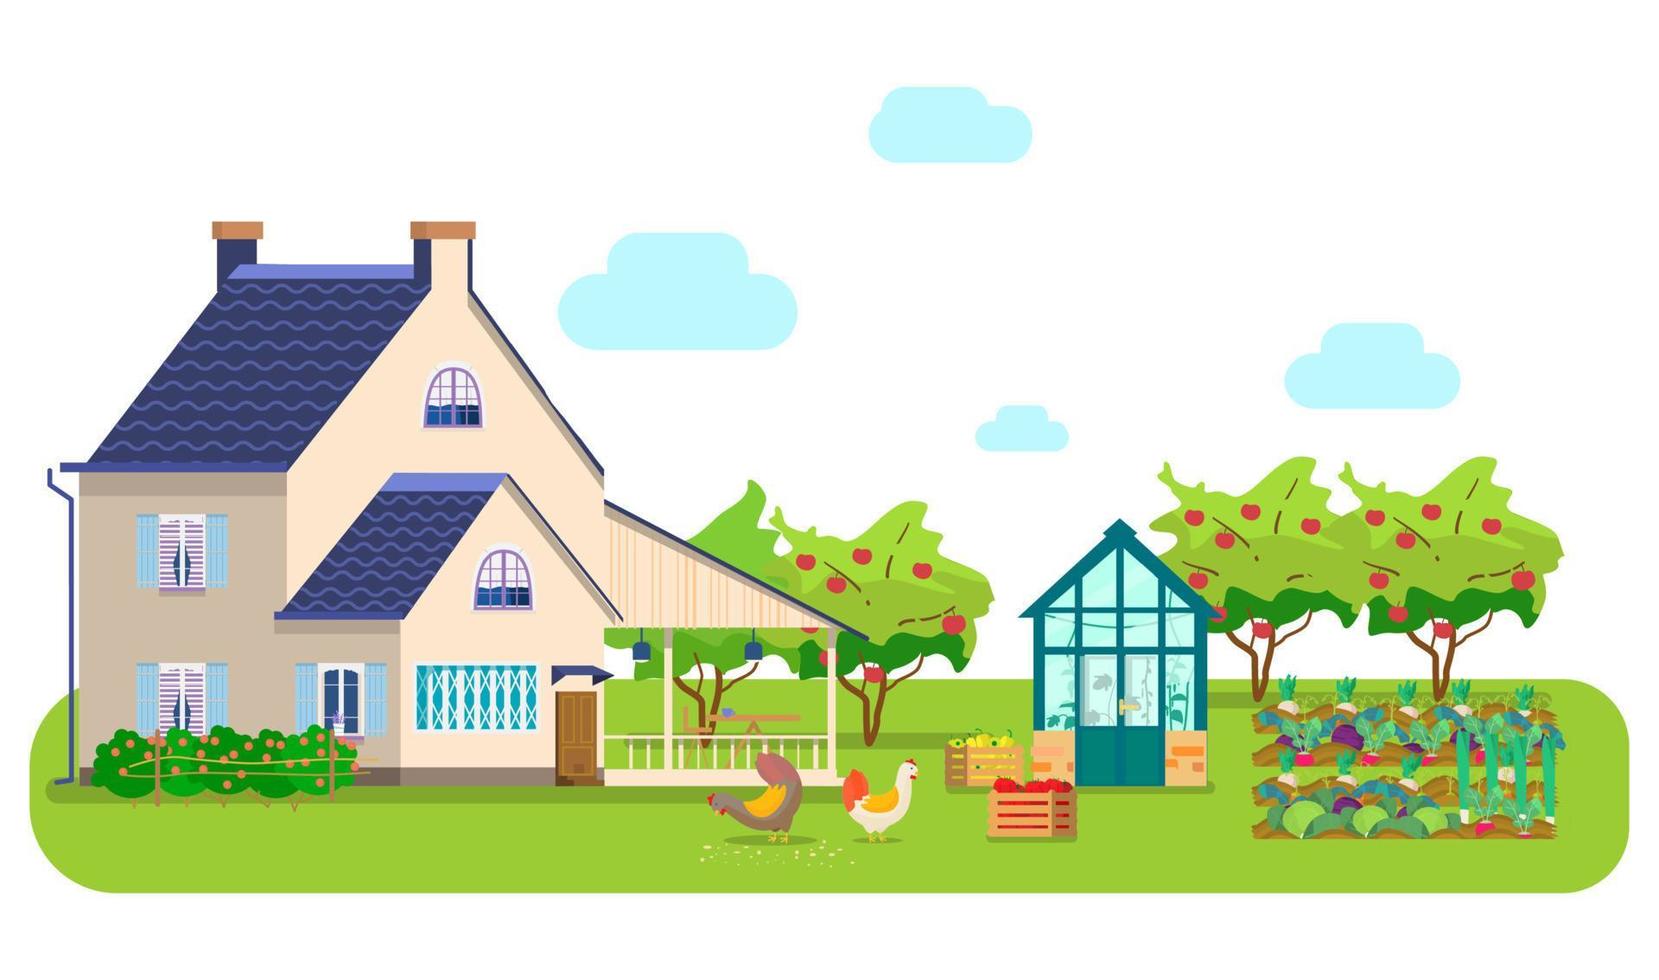 vektor illustration av landsbygden scen. lanthus, växthus, höns som pickar spannmål, trälådor med grönsaker, grönsaksbäddar, äppelodling.